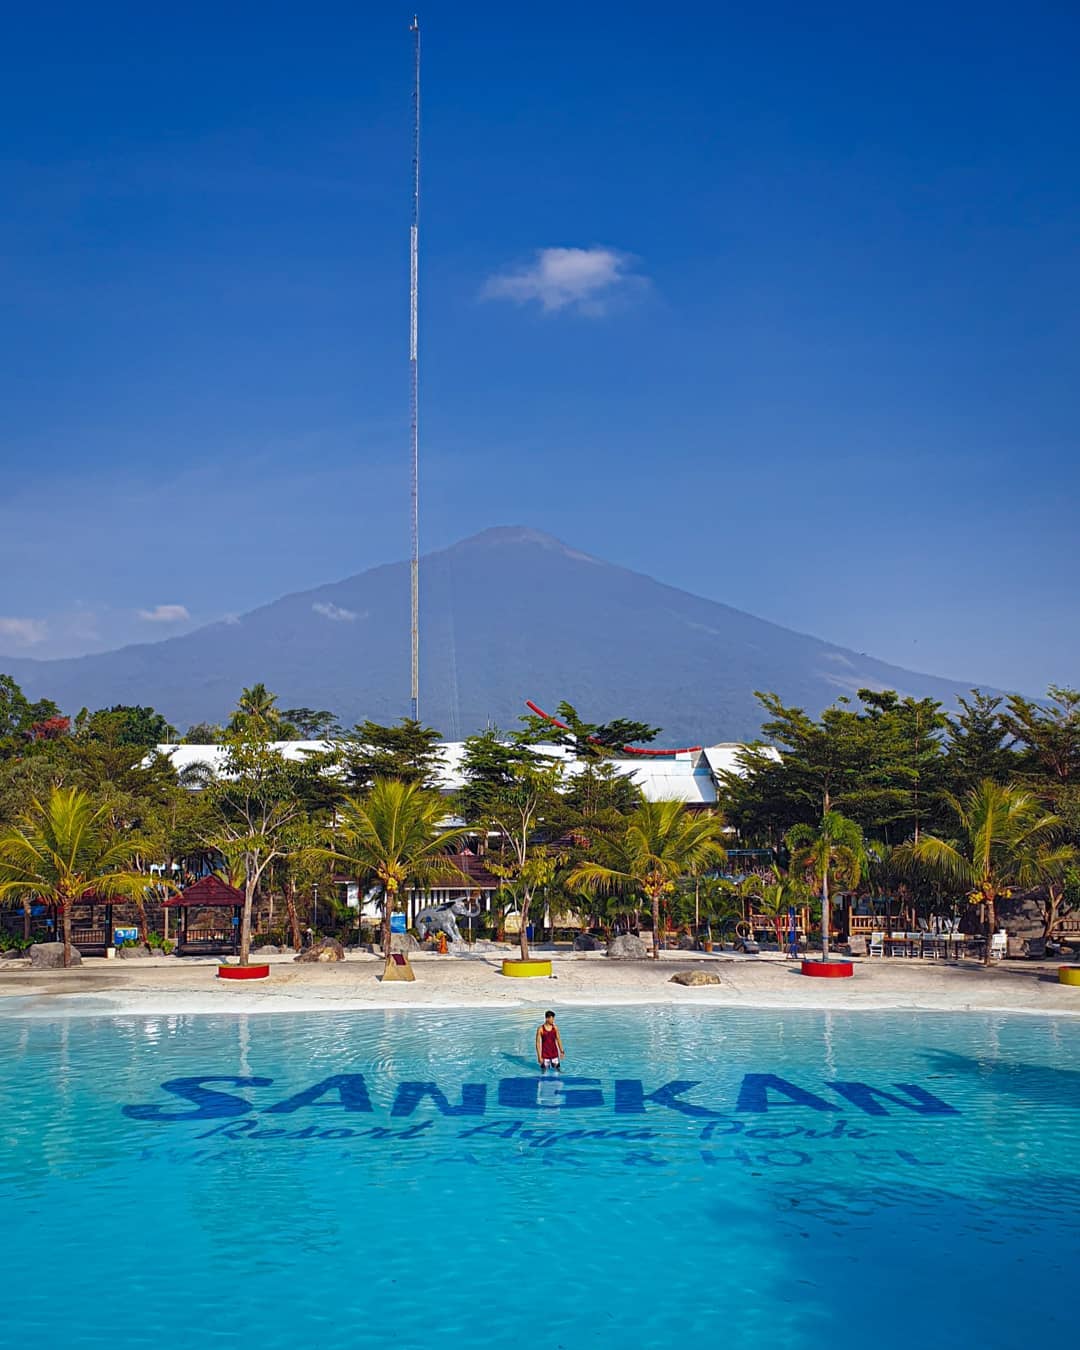 Review Sangkan Resort Aqua Park Kuningan Image From @masway___